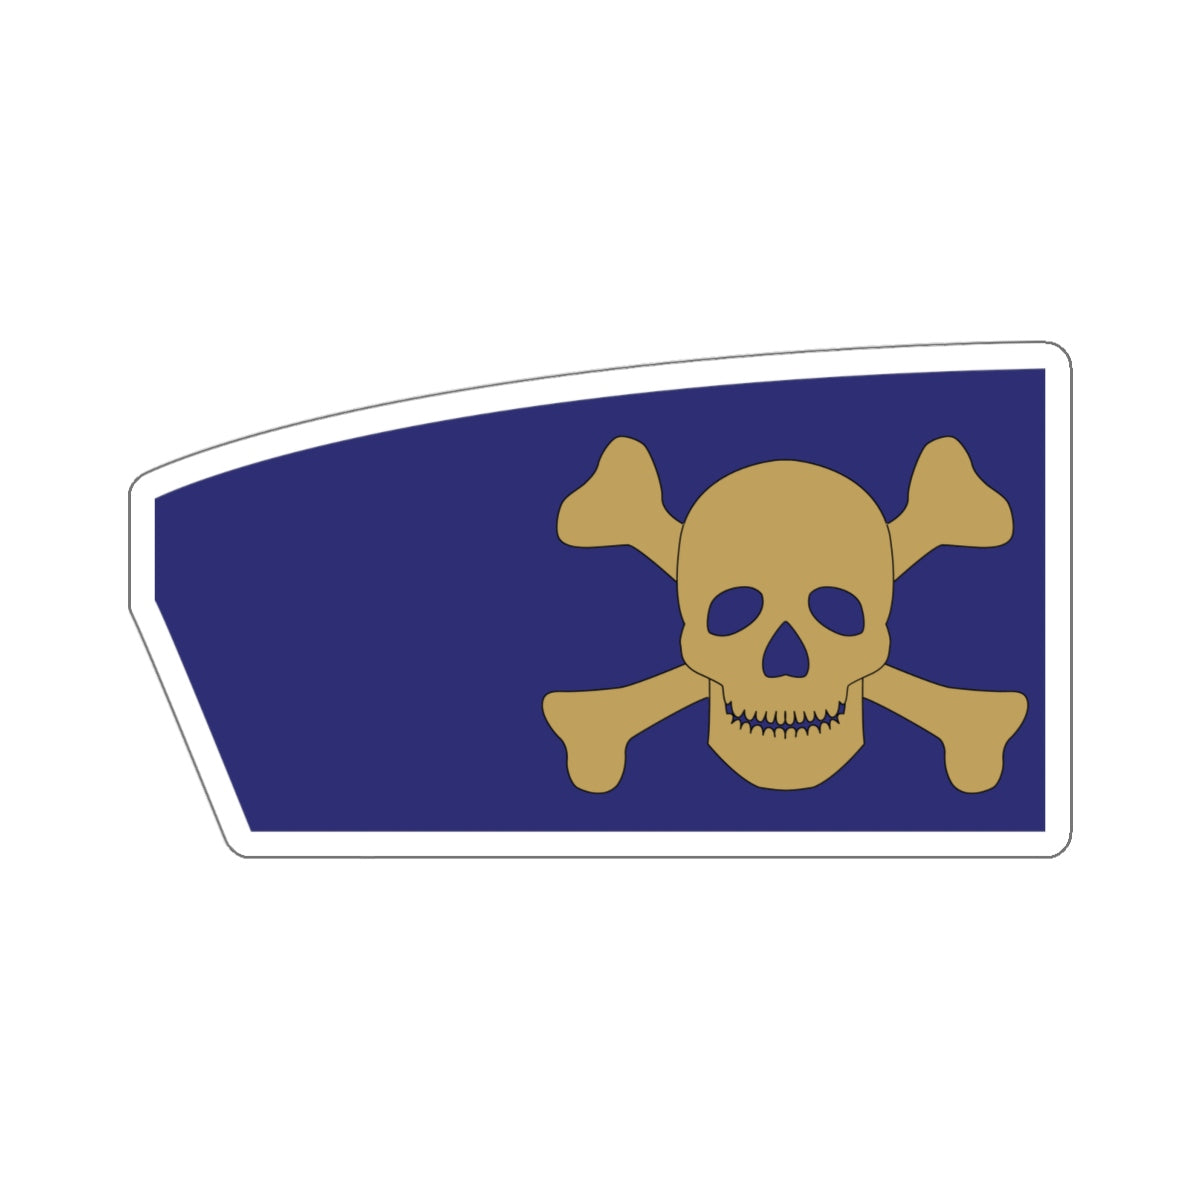 Massachusetts Maritime Academy Sticker